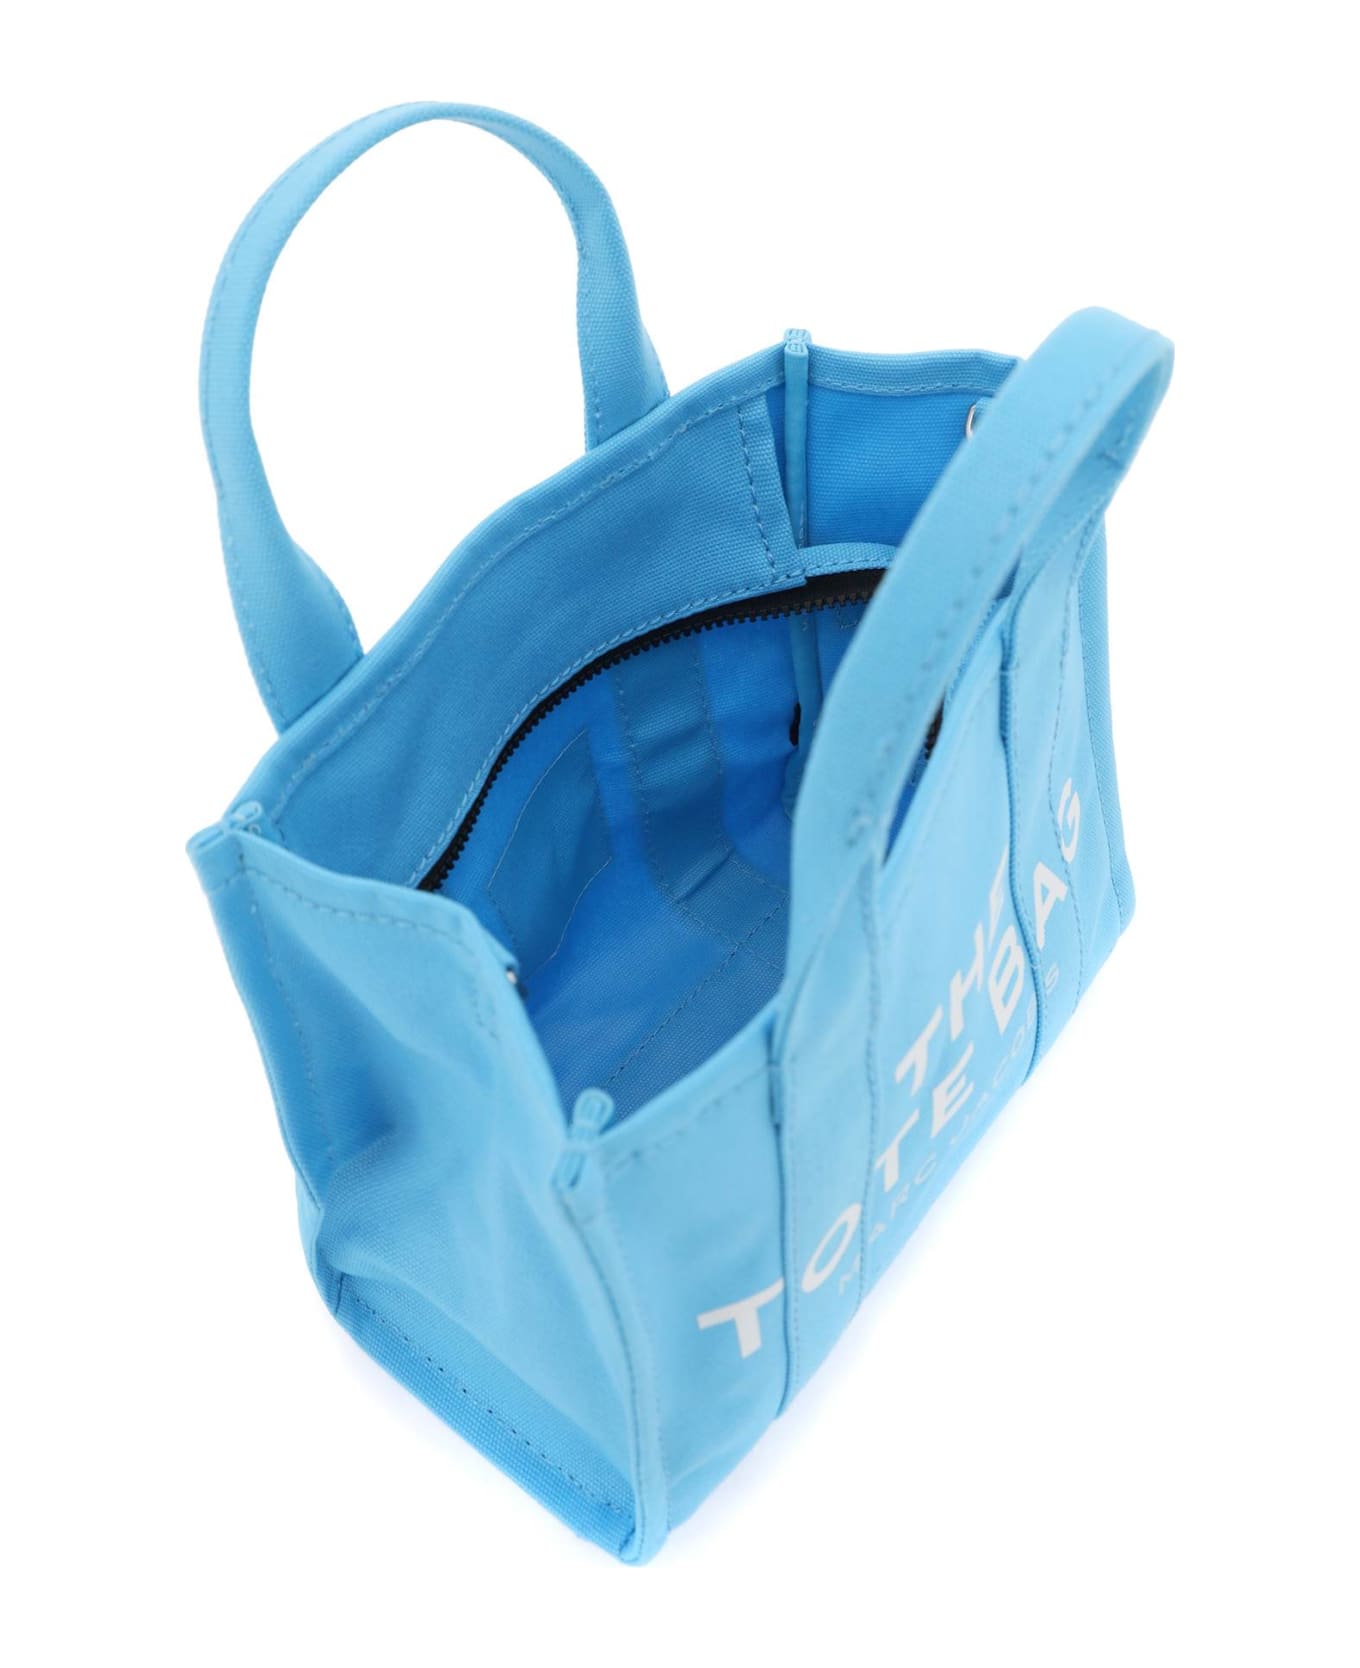 Marc Jacobs The Mini Tote Bag - Light blue